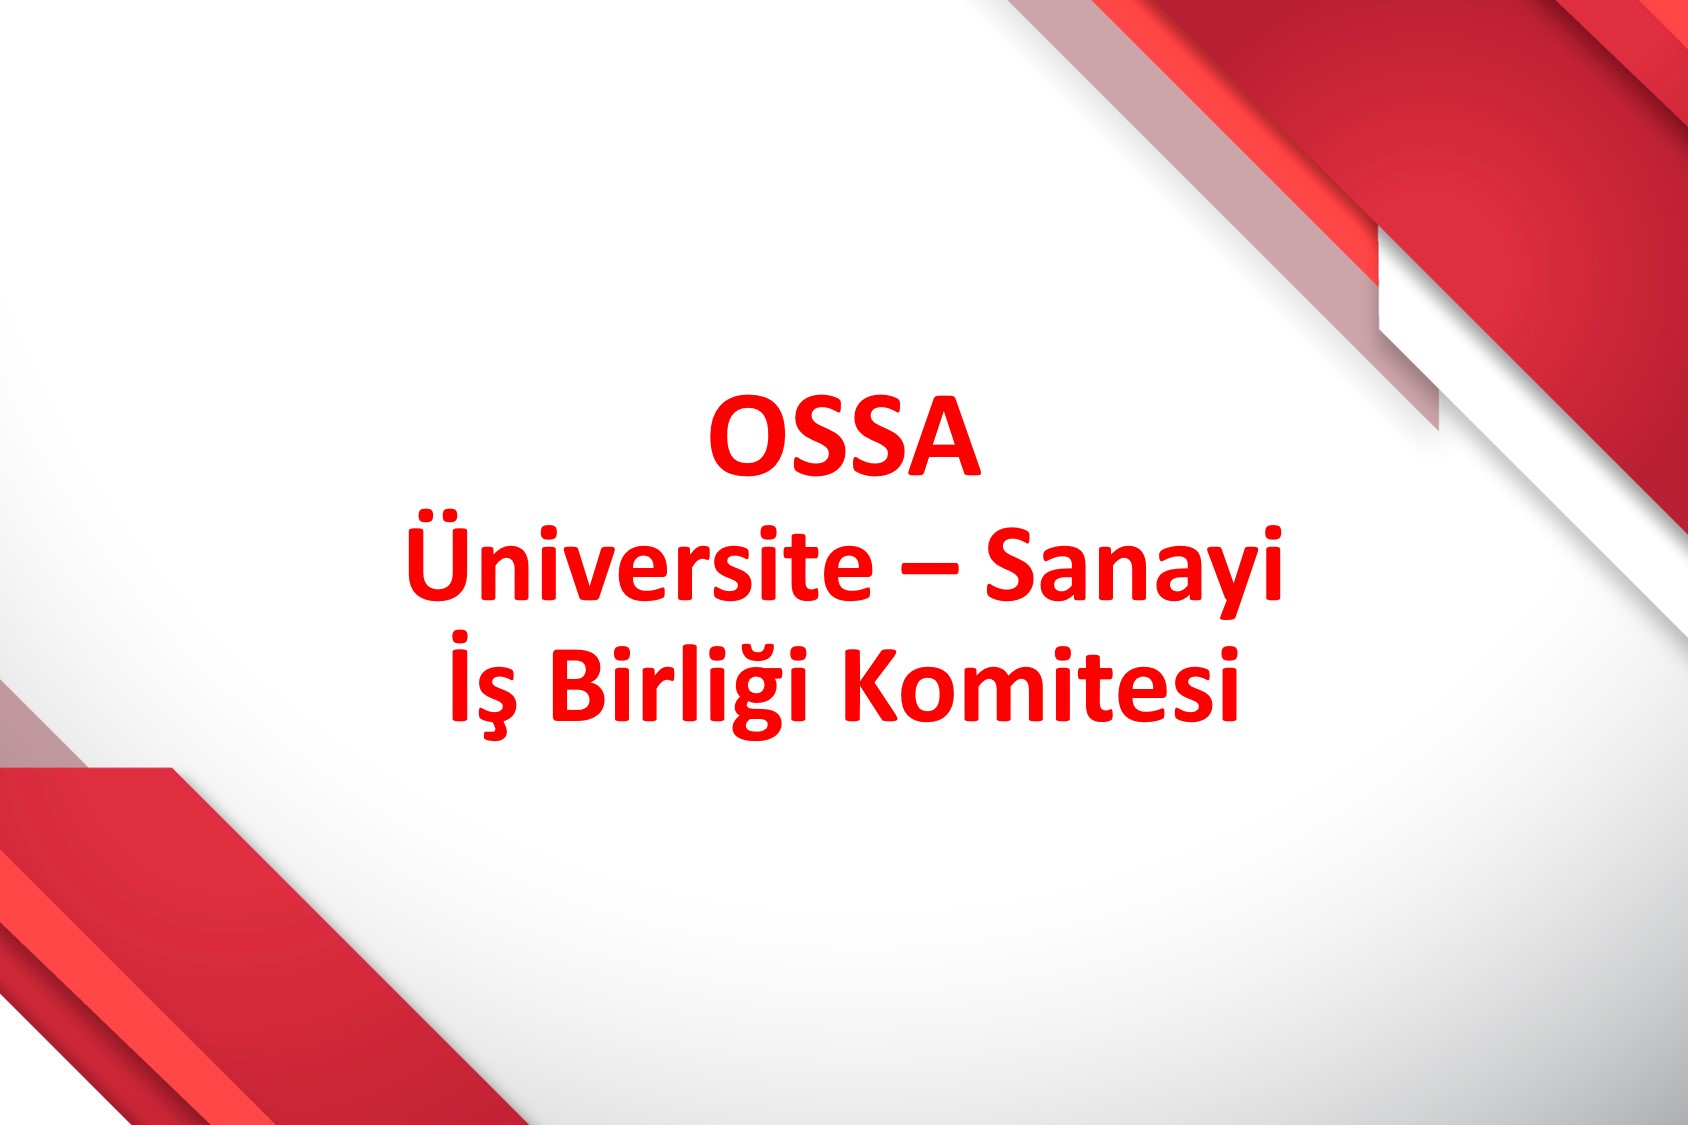 OSSA Üniversite - Sanayi İş Birliği Komitesinin İlk Toplantısı Gerçekleştirildi